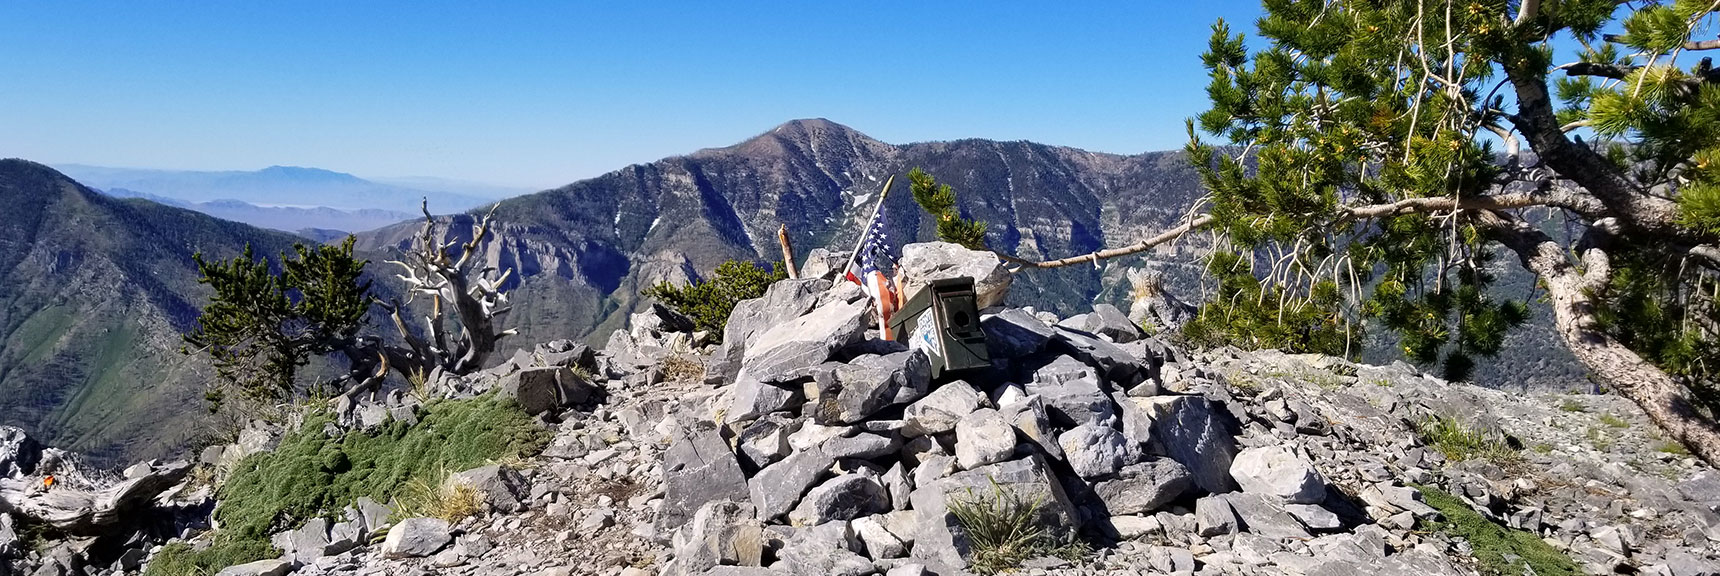 Fletcher Peak Summit, Griffith Peak in Background